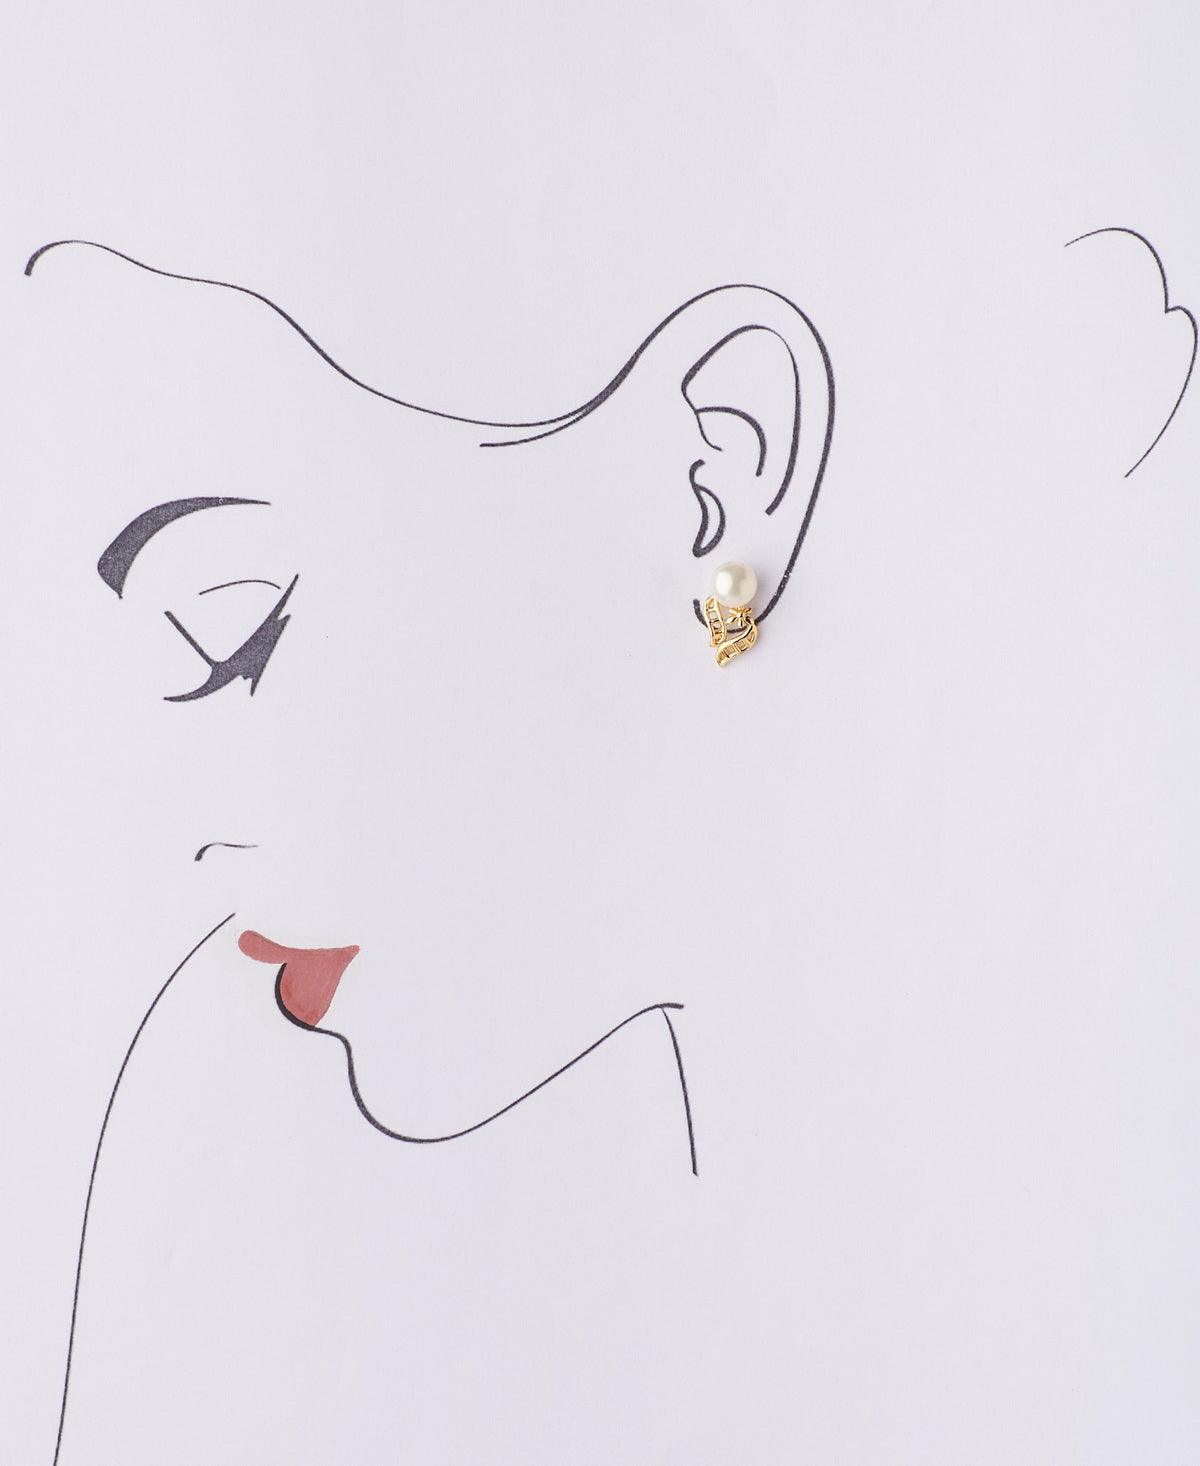 Pretty Pearl Stud Earring - Chandrani Pearls